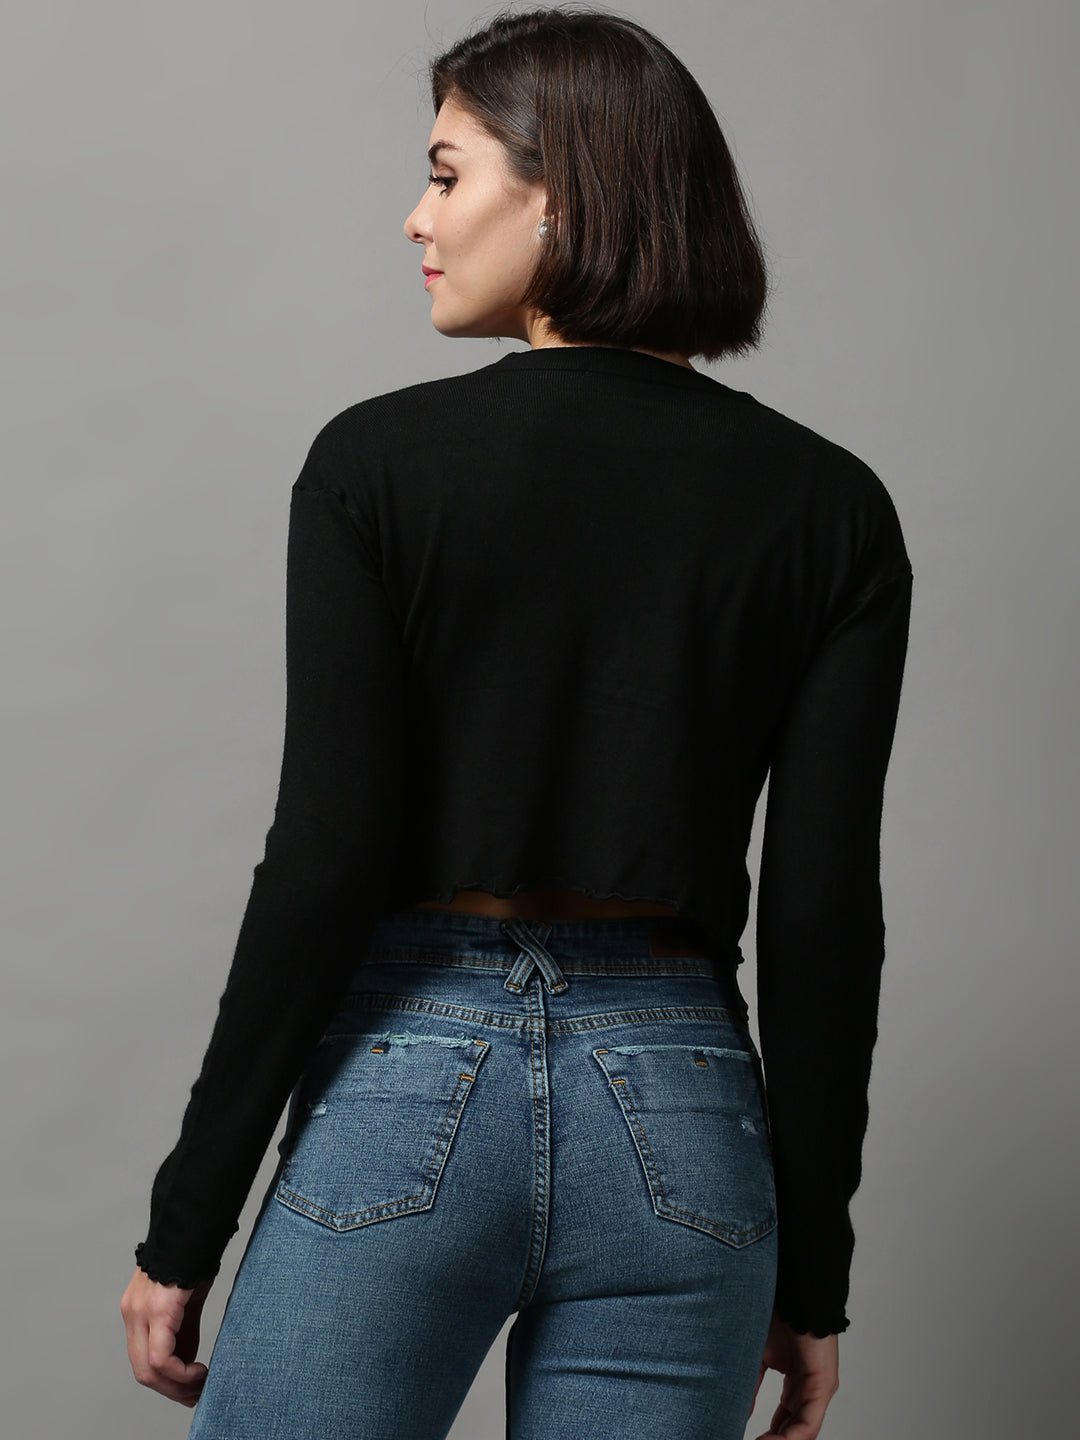 Women's Black Solid Crop Sweater